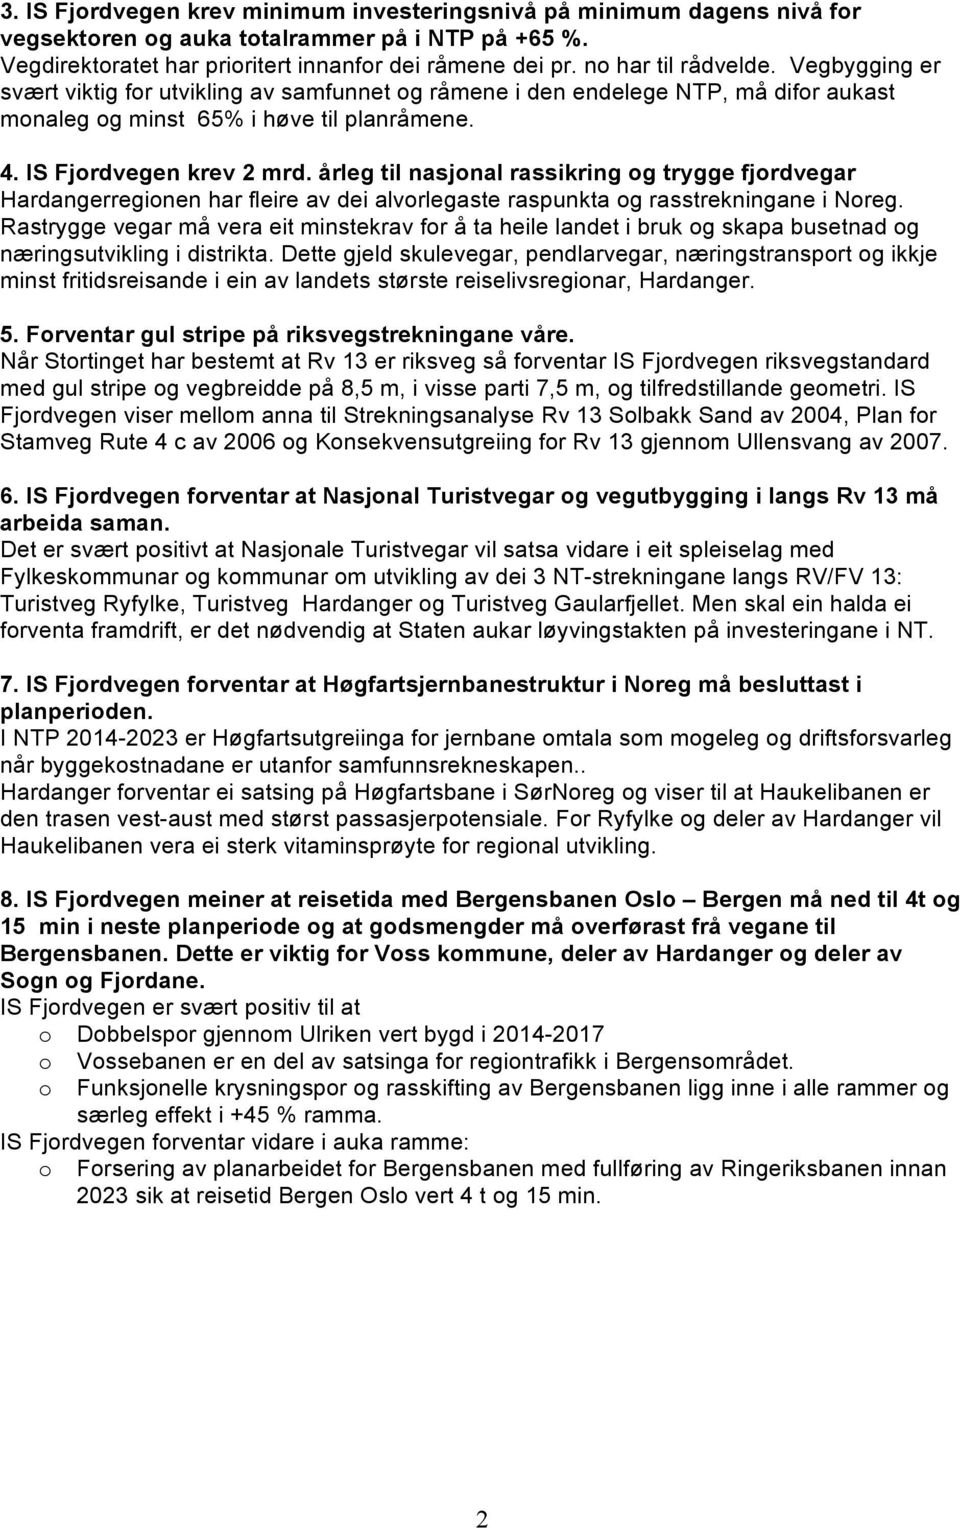 årleg til nasjnal rassikring g trygge fjrdvegar Hardangerreginen har fleire av dei alvrlegaste raspunkta g rasstrekningane i Nreg.